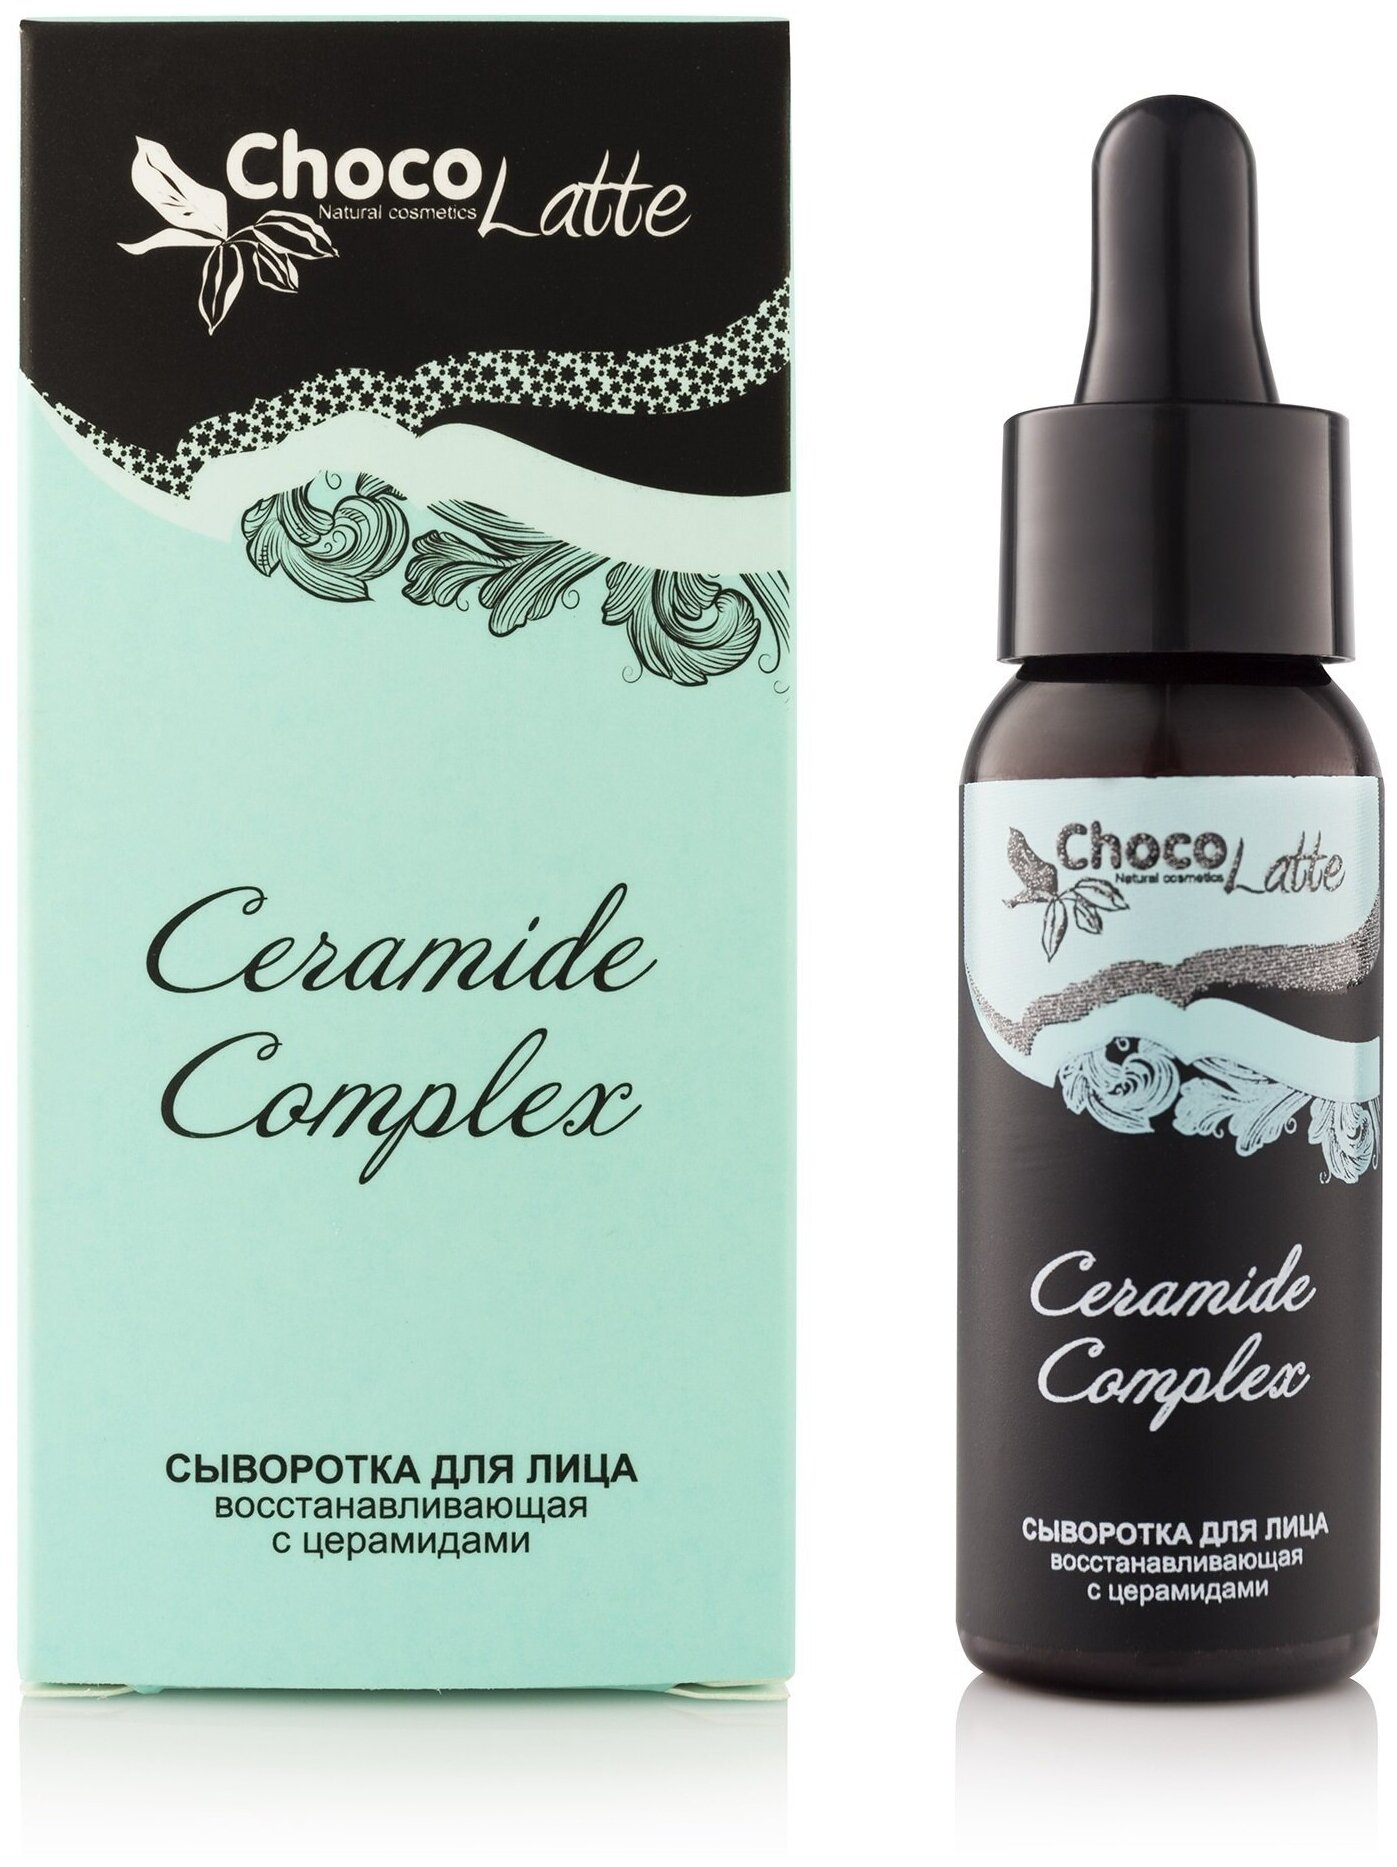 Сыворотка ChocoLatte для лица (oil-free) CERAMIDE COMPLEX восстанавливающая с церамидами, 30мл